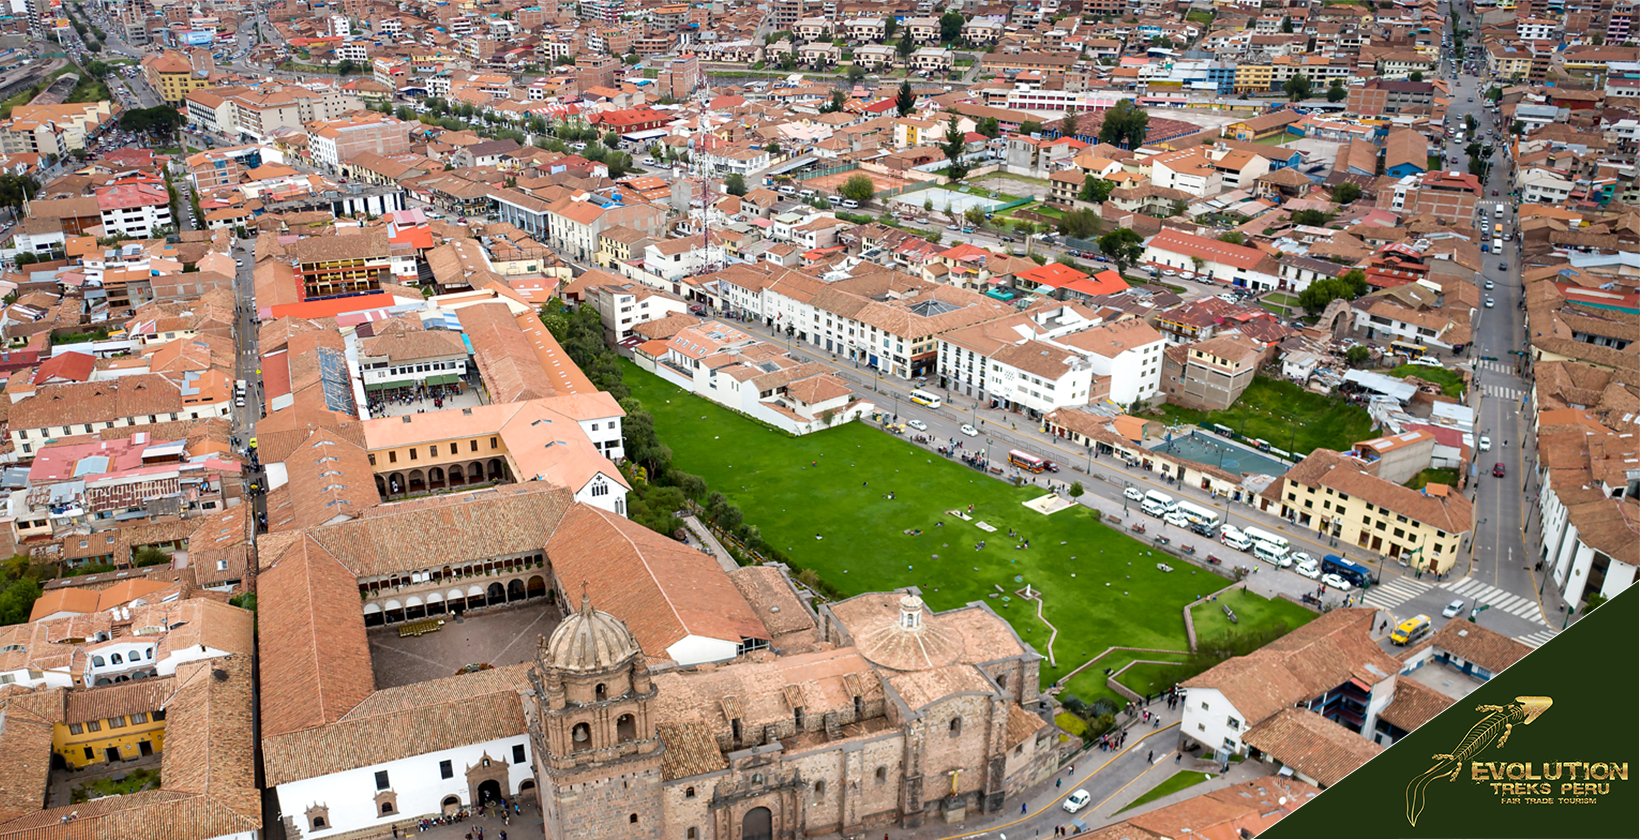 Celebrate Cusco's Golden History, Monasterio